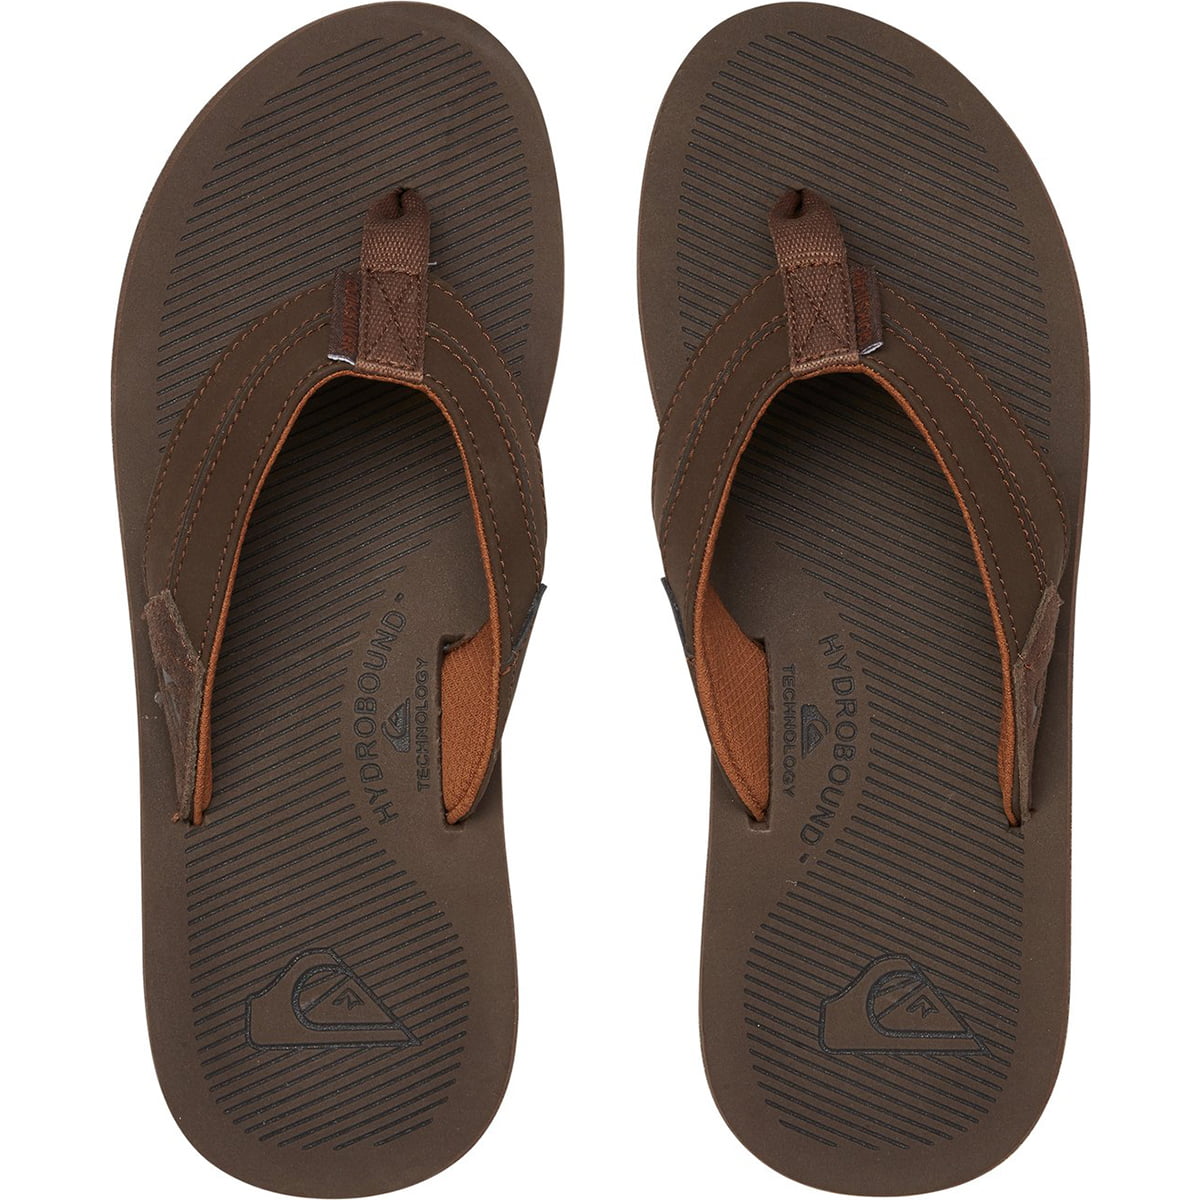 Quiksilver Men's Coastal Oasis III Sandals - Walmart.com